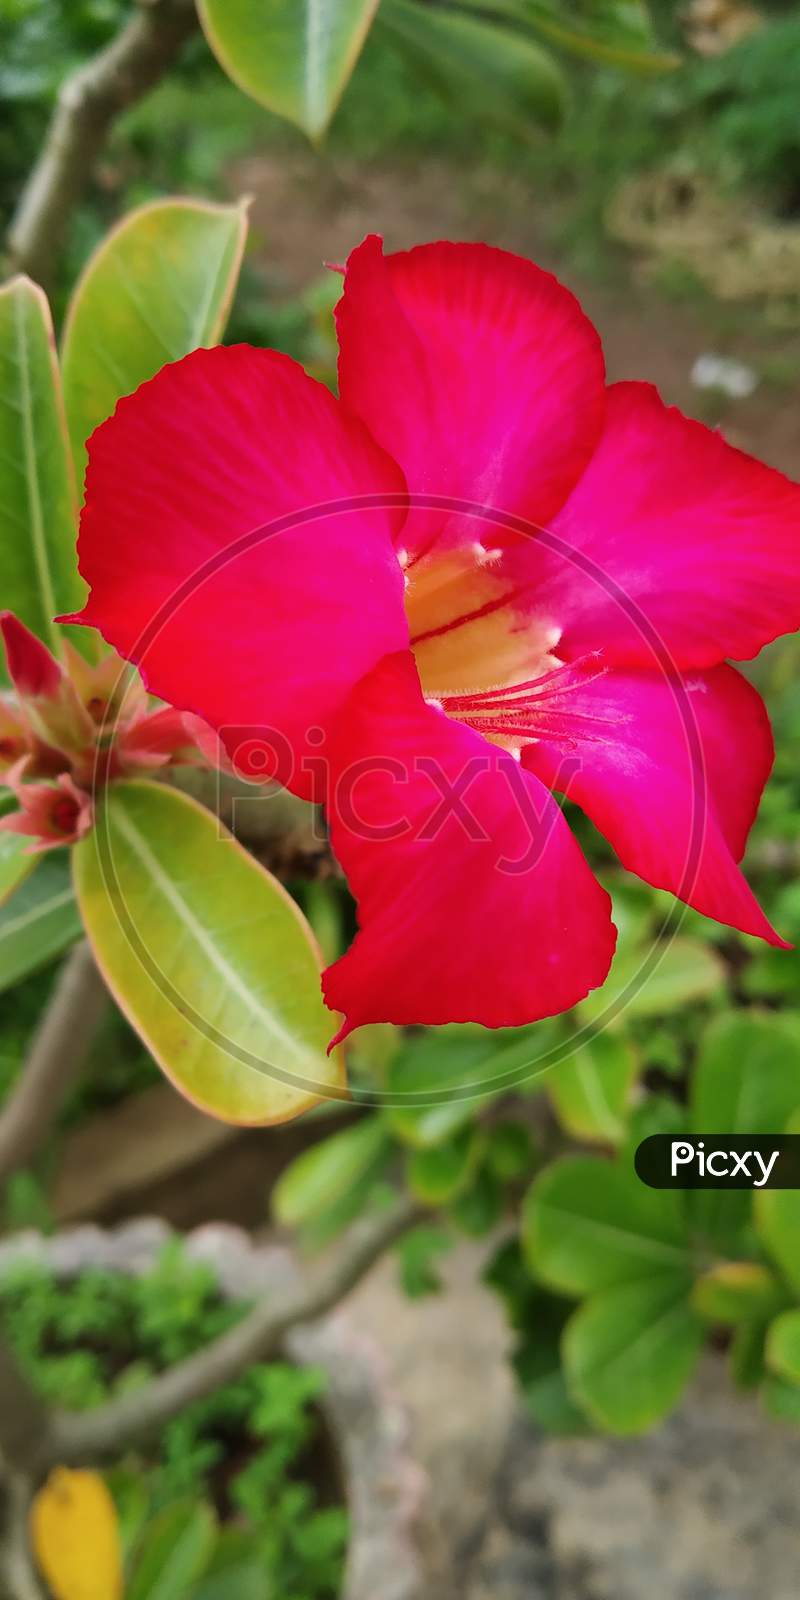 Adenium flower